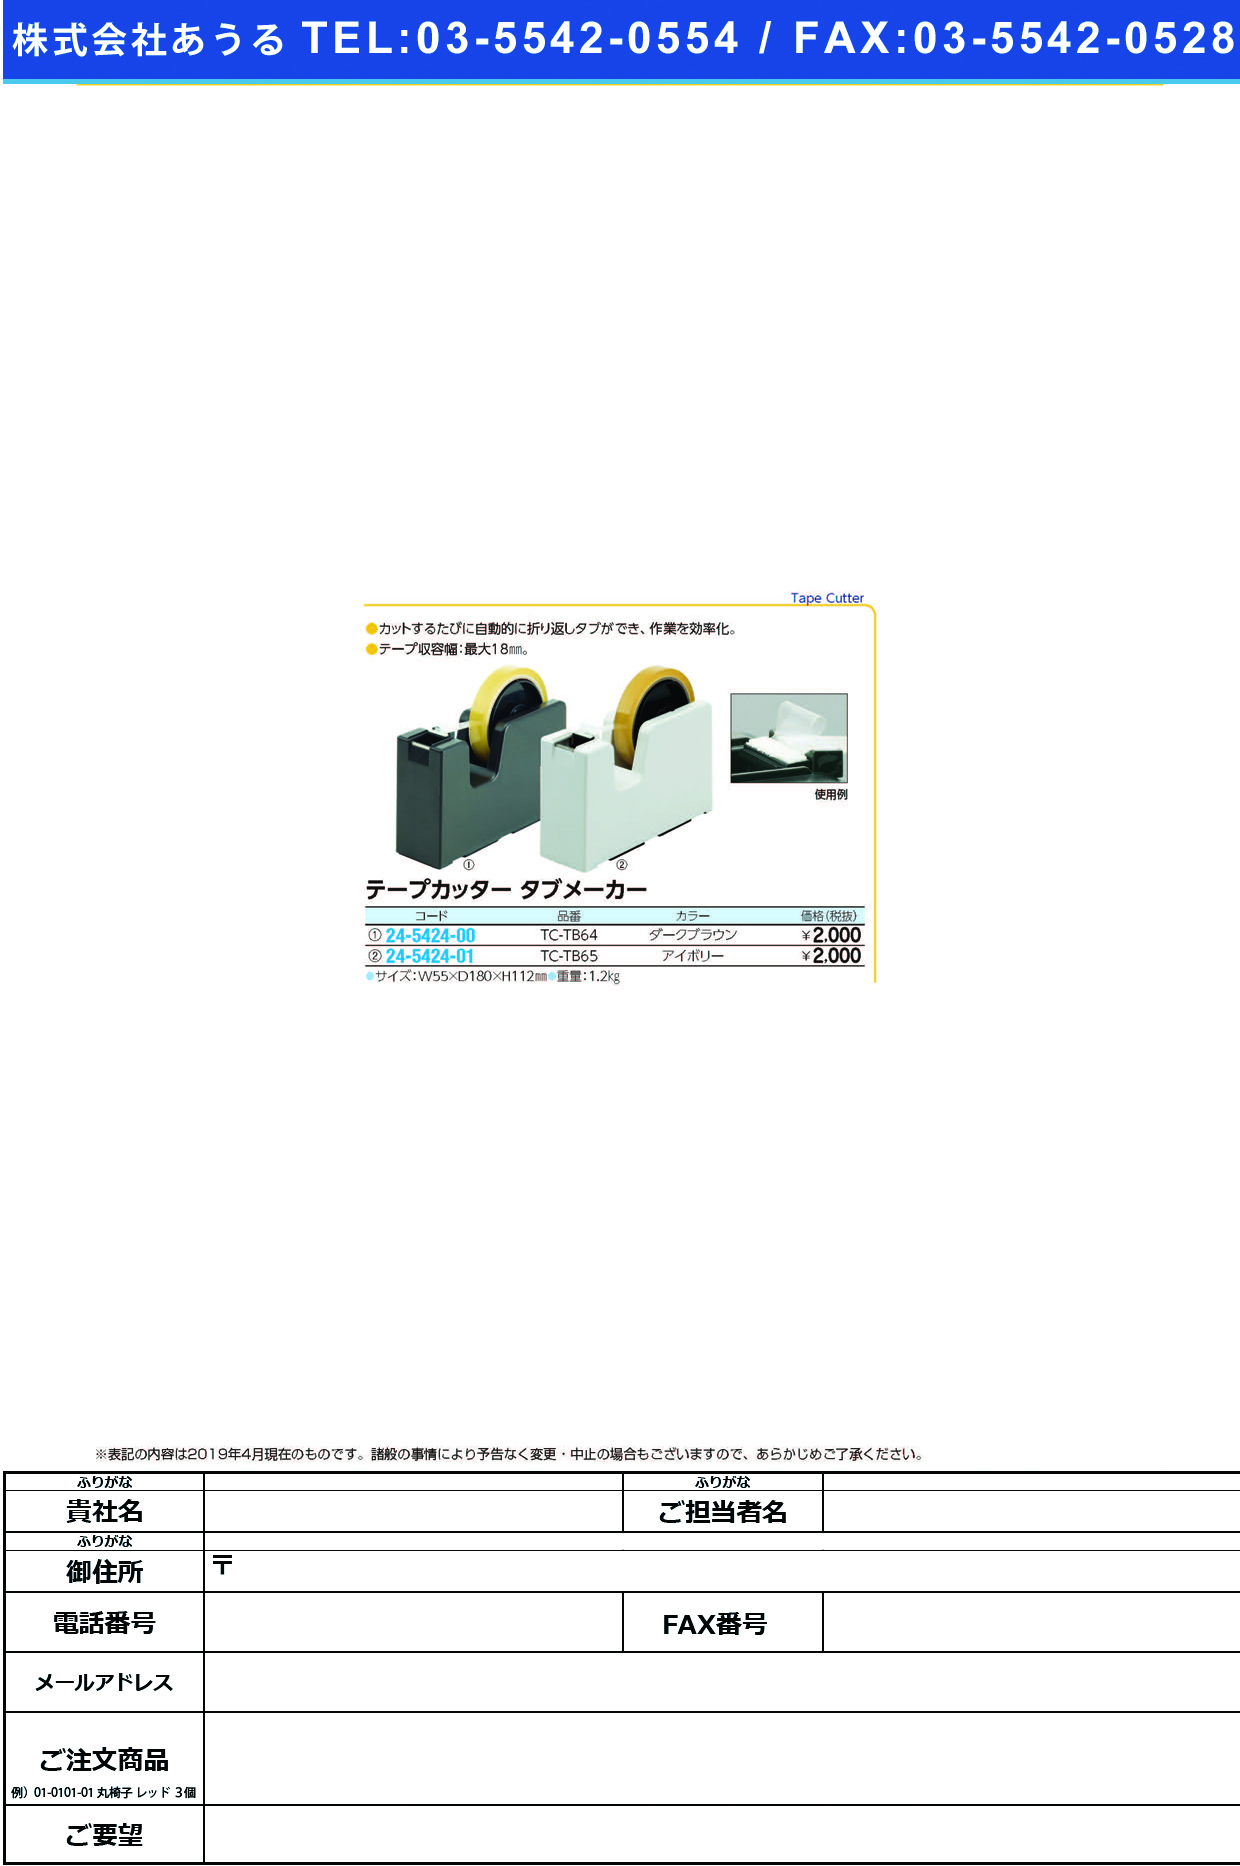 (24-5424-01)テープカッタータブメーカー TC-TB65(ｱｲﾎﾞﾘｰ) ﾃｰﾌﾟｶｯﾀｰﾀﾌﾞﾒｰｶｰ【1台単位】【2019年カタログ商品】